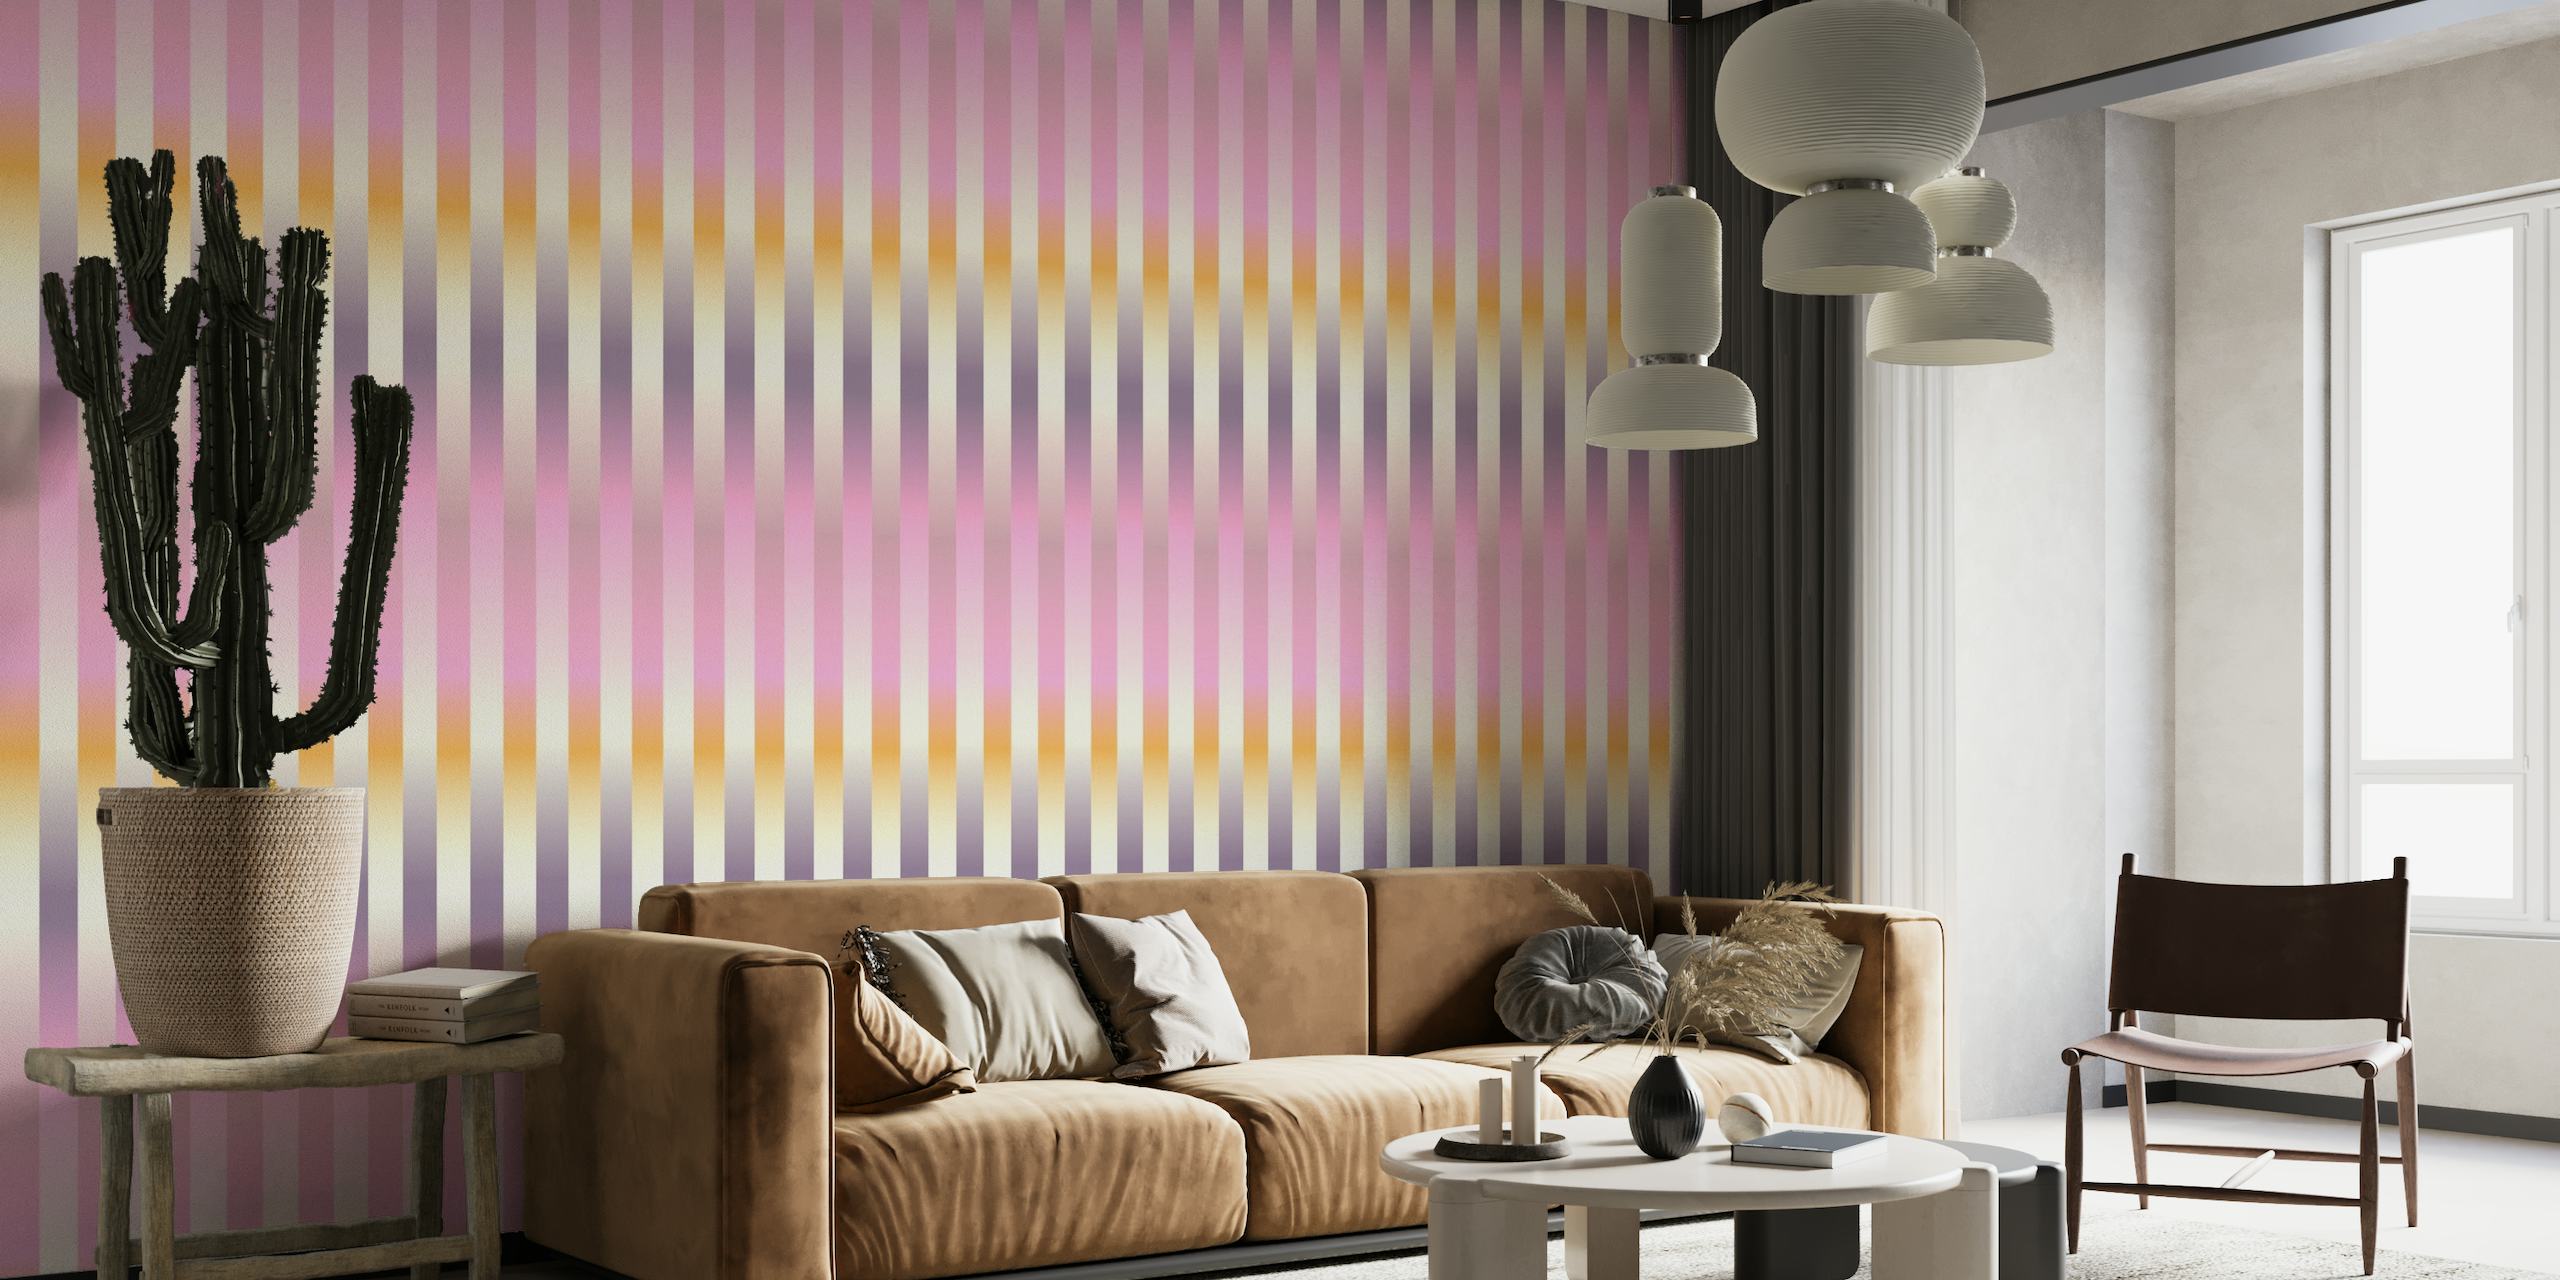 Blurred Stripes lilac wallpaper